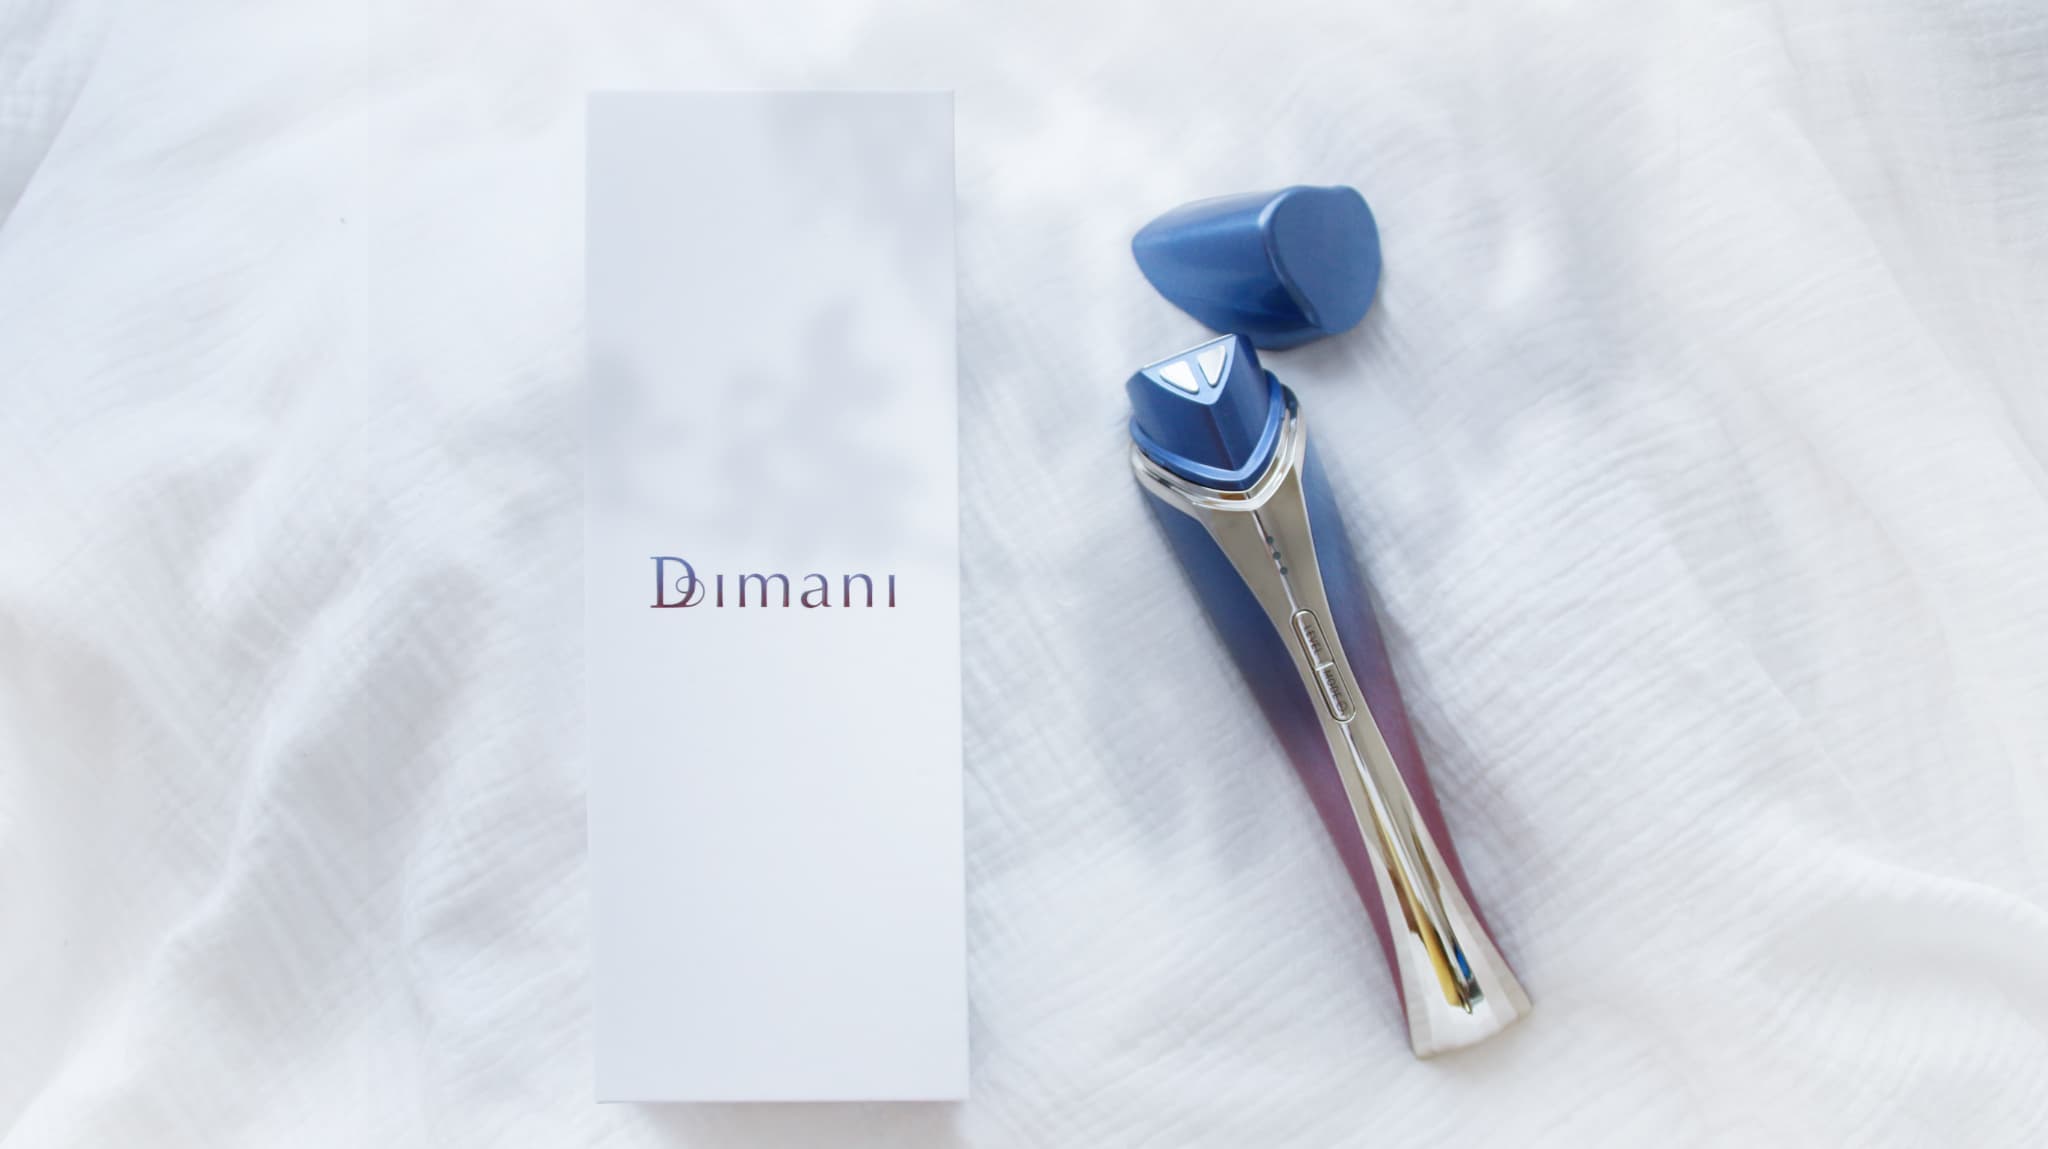 ディマーニRF美顔器の通販最安値 税込74,800円はDIMANI公式通販